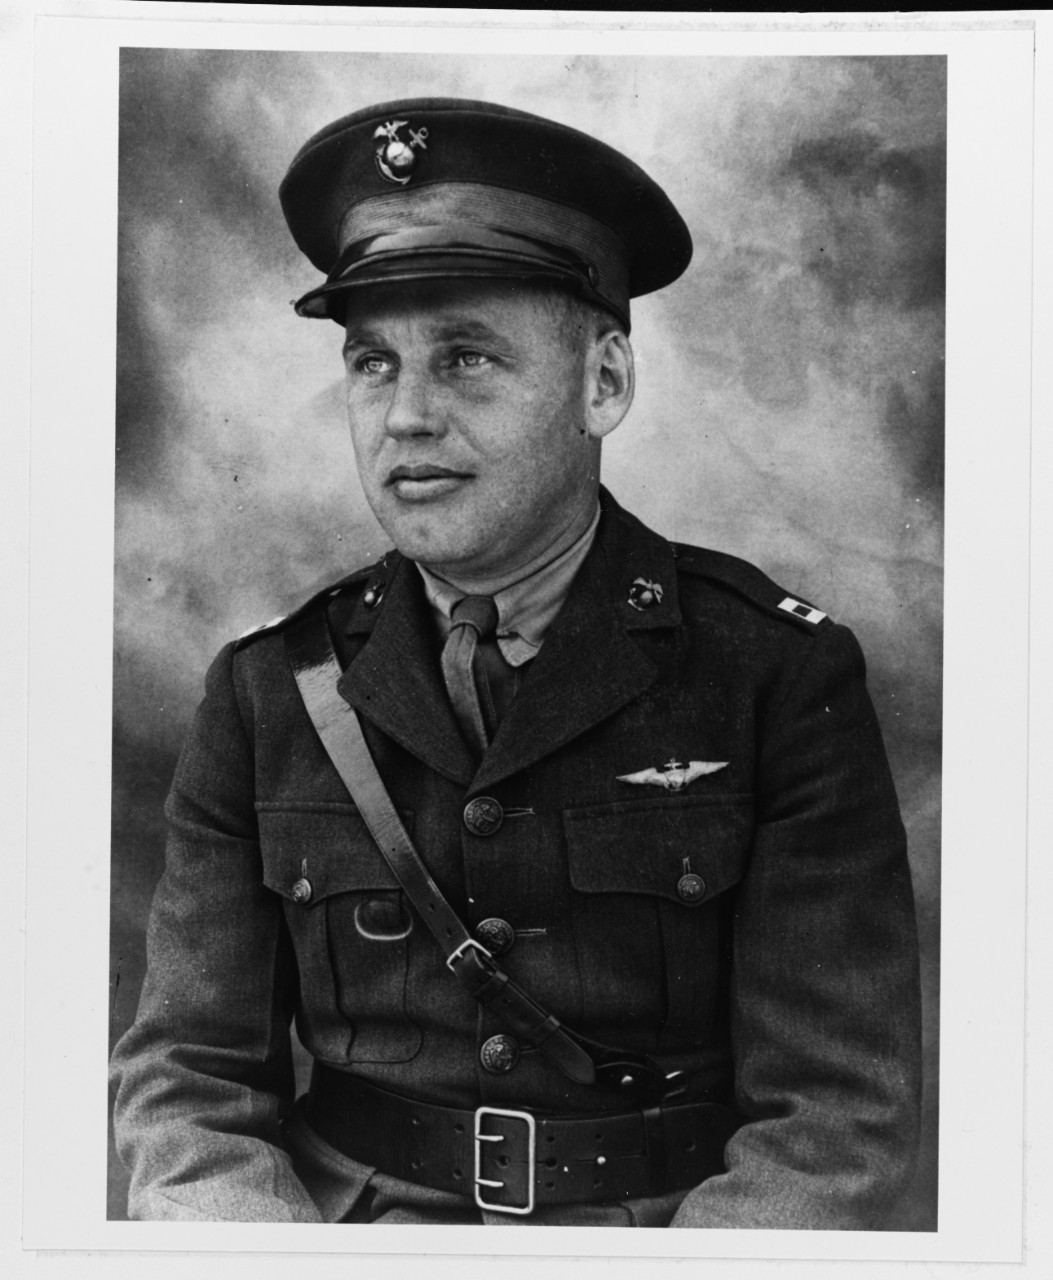 Captain Arthur H. Page, Jr., USMC Aviation